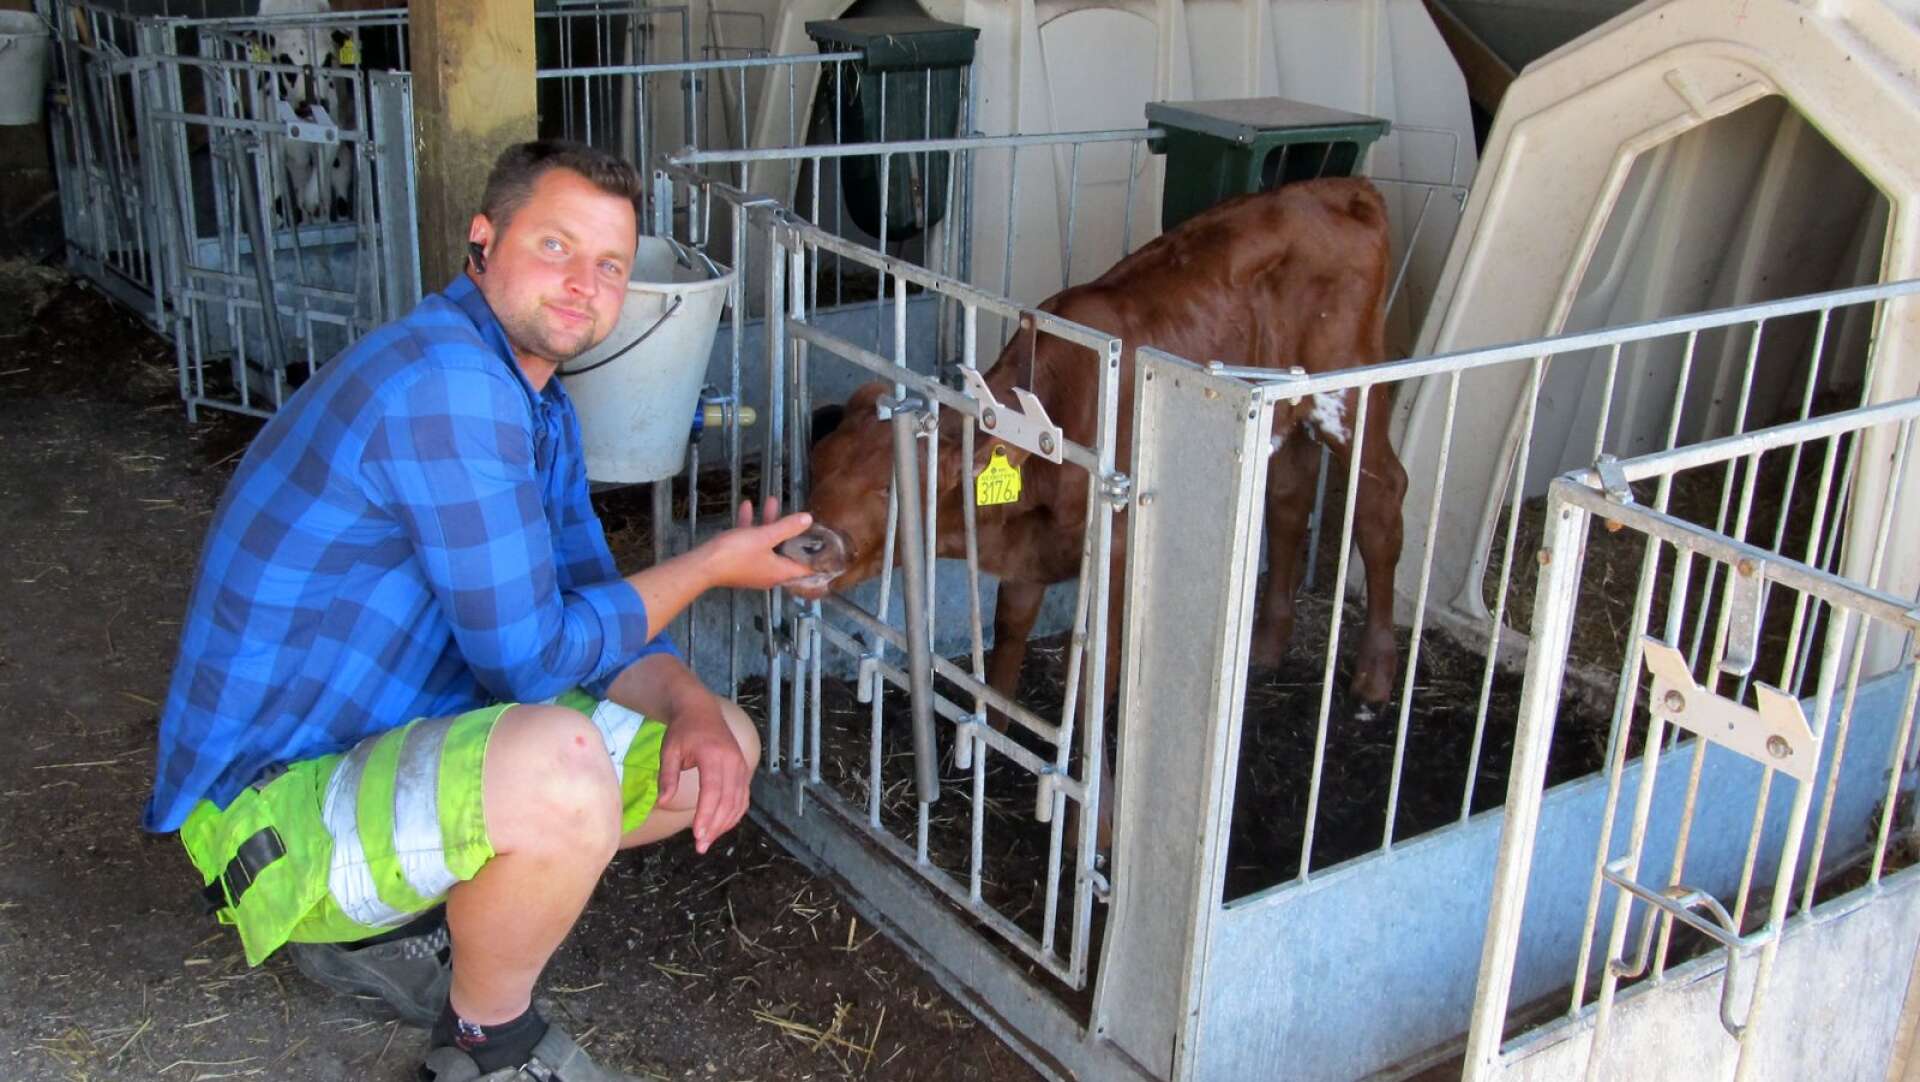 Nygårdsbonden Anders Widinghoff storsatsar på klimat och miljö inom sin djurhållning. Ett projekt med en elektrifierad fodermixer ska spara 30 000 liter diesel under ett år.